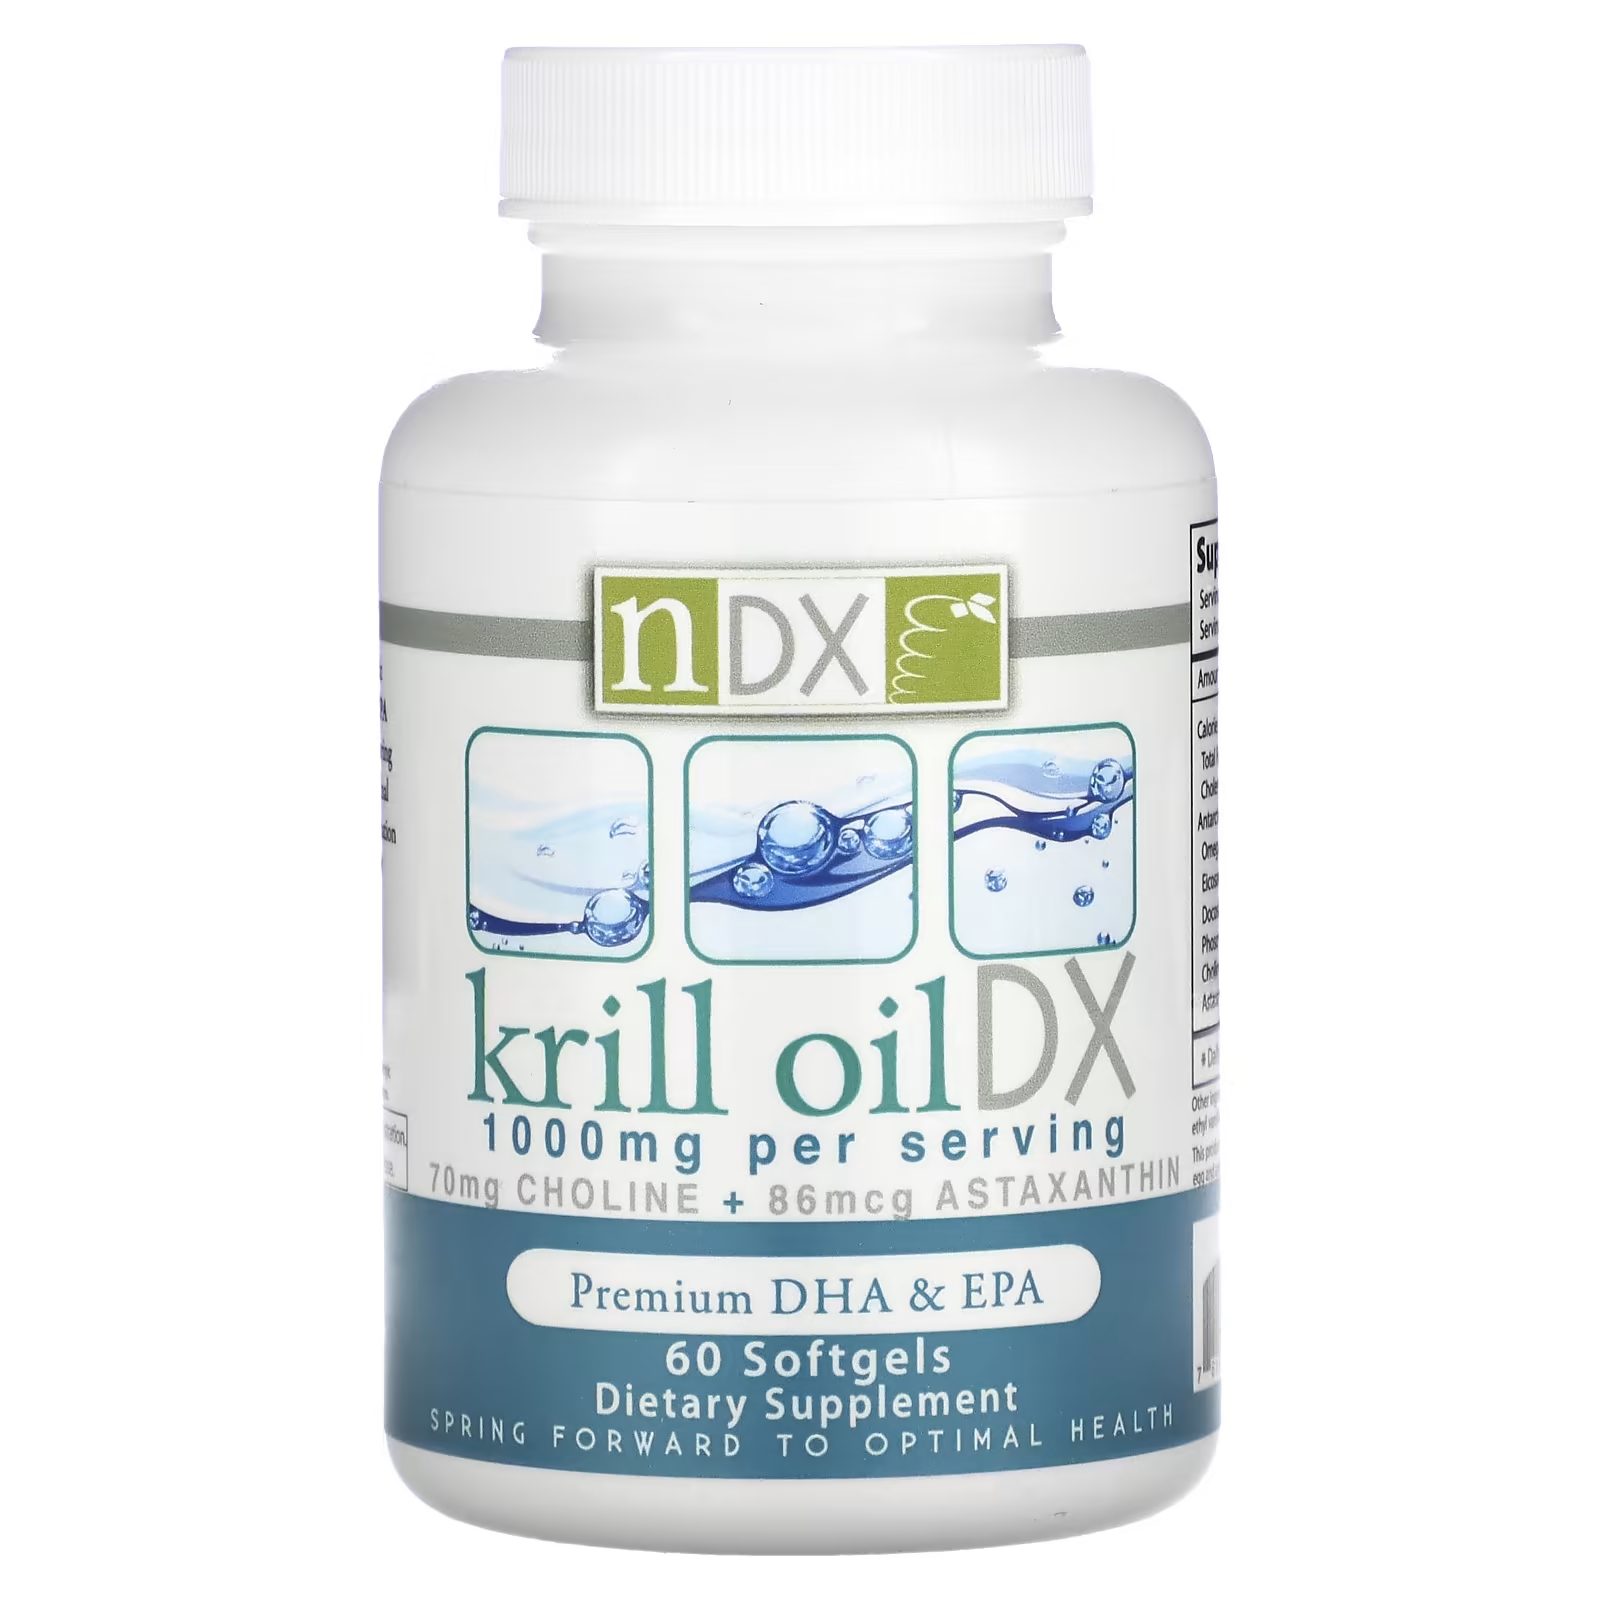 Пищевая добавка Natural Dynamix Krill Oil DX Premium DHA и EPA 1000 мг, 60 мягких таблеток natural dynamix ndx масло криля dx 1000 мг 60 мягких таблеток